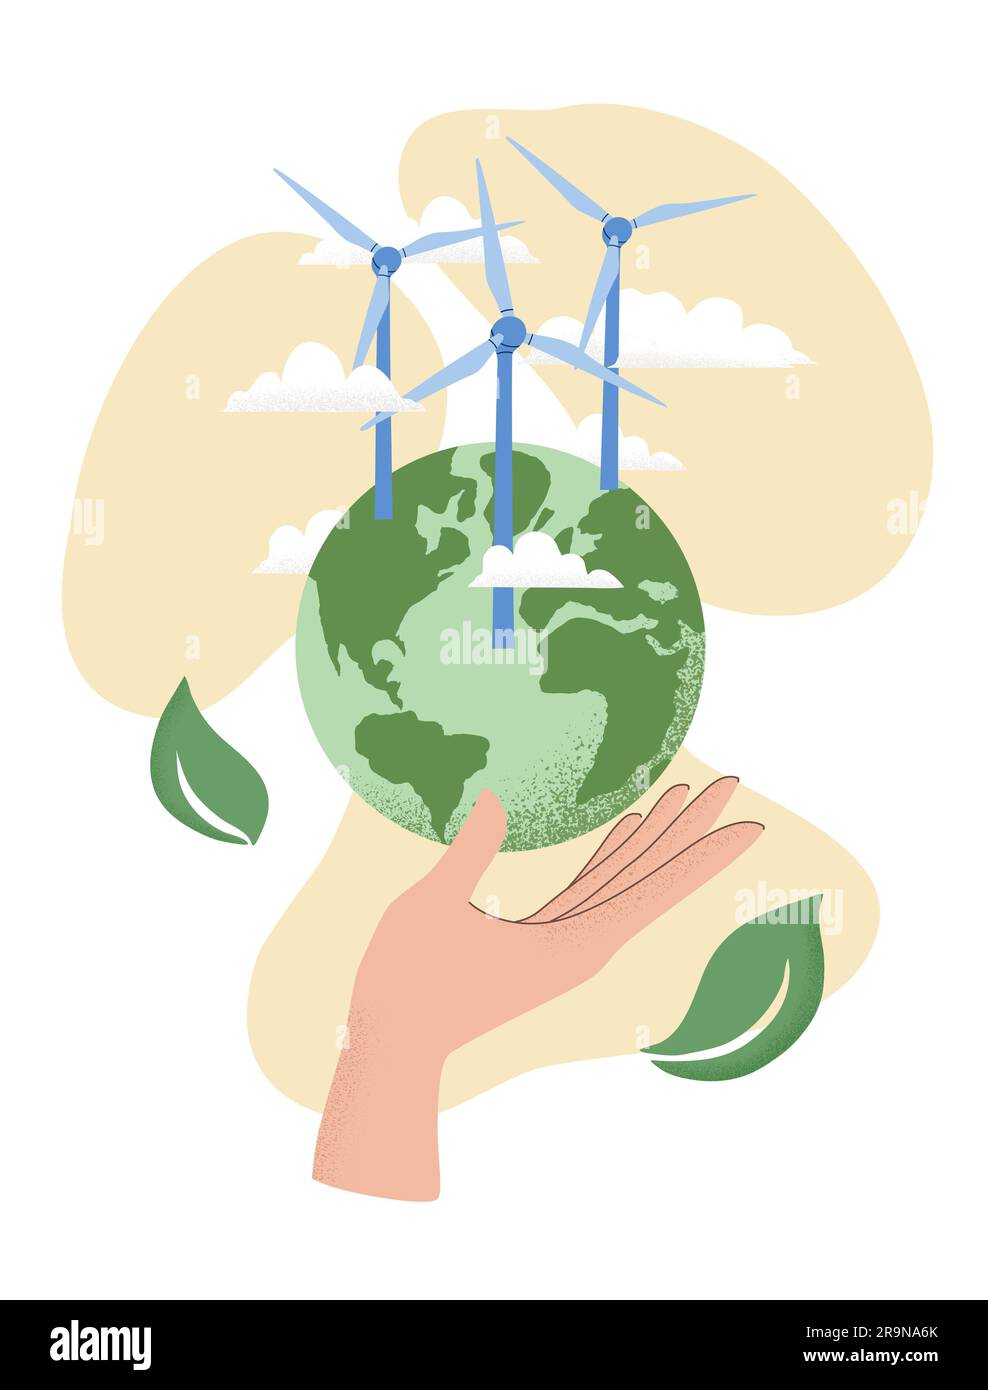 Illustration vectorielle de la main humaine tenant le globe terrestre, centrale éolienne. Concept de la Journée mondiale de l'environnement, sauver la Terre, durabilité, renouvelable W Illustration de Vecteur